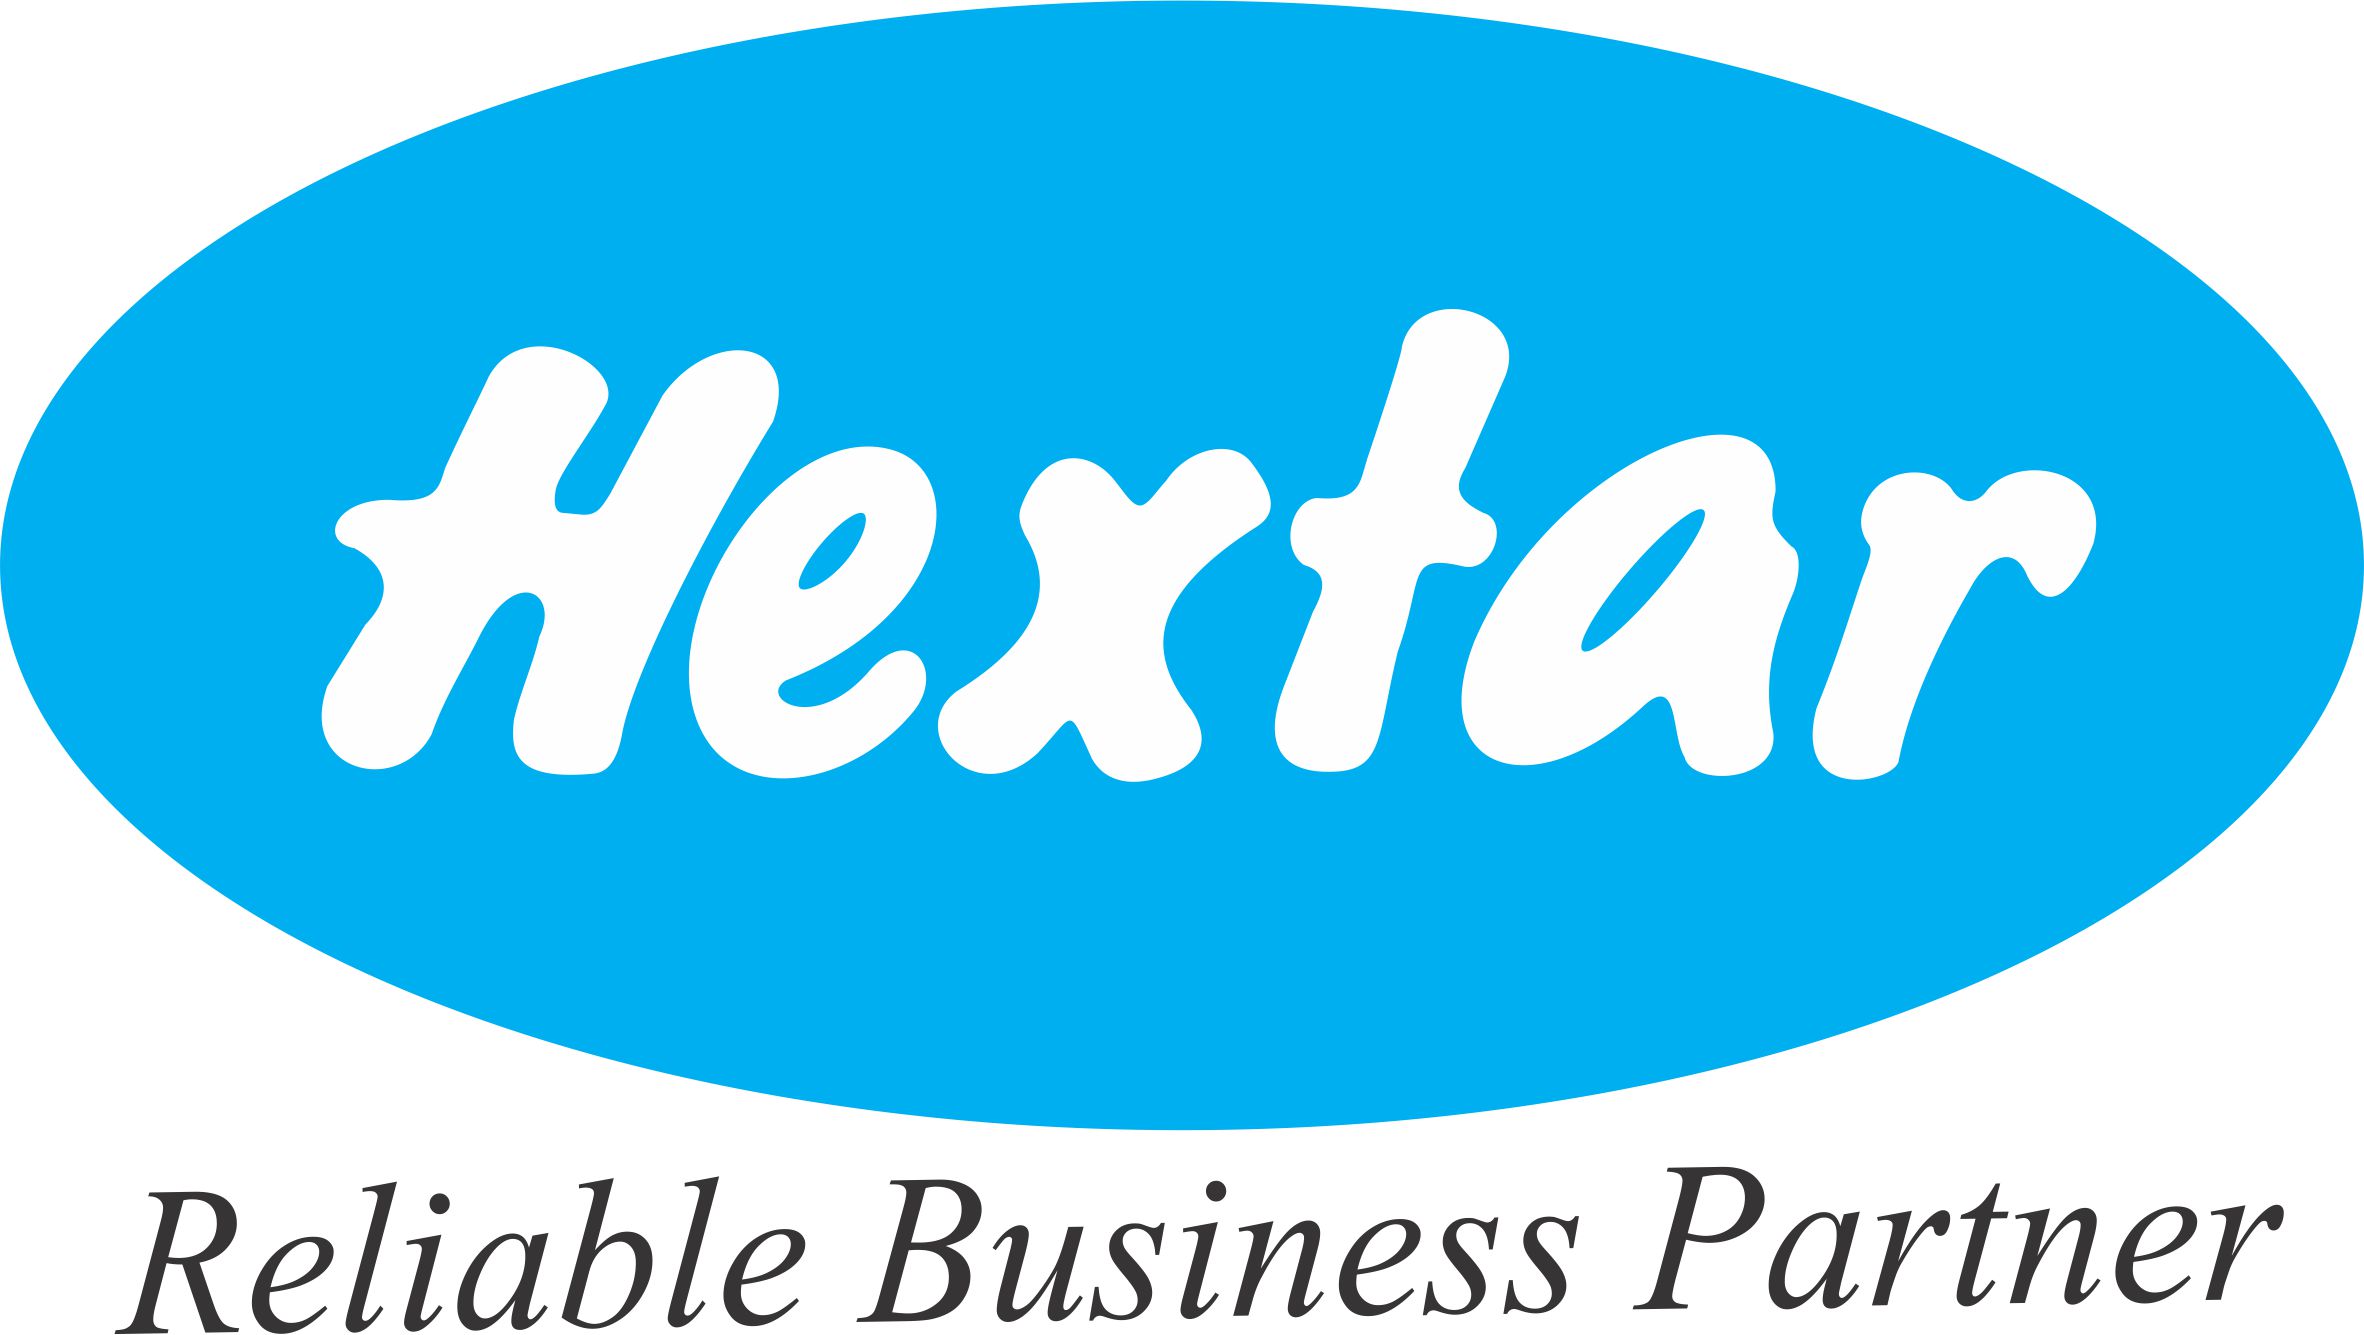 https://www.pakpositions.com/company/hextar-chemicals-enterprises